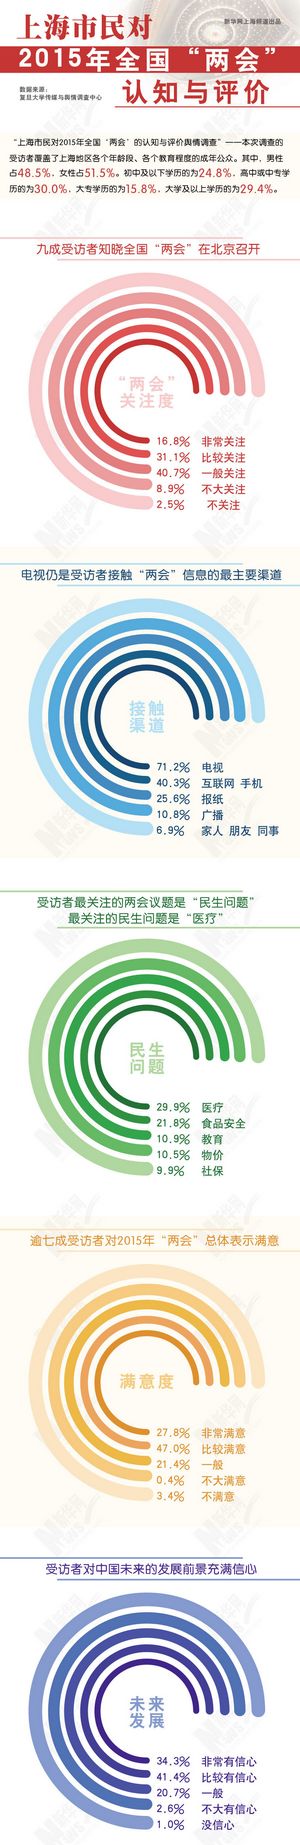 上海市民对2015年全国“两会”的认知与评价舆情调查报告